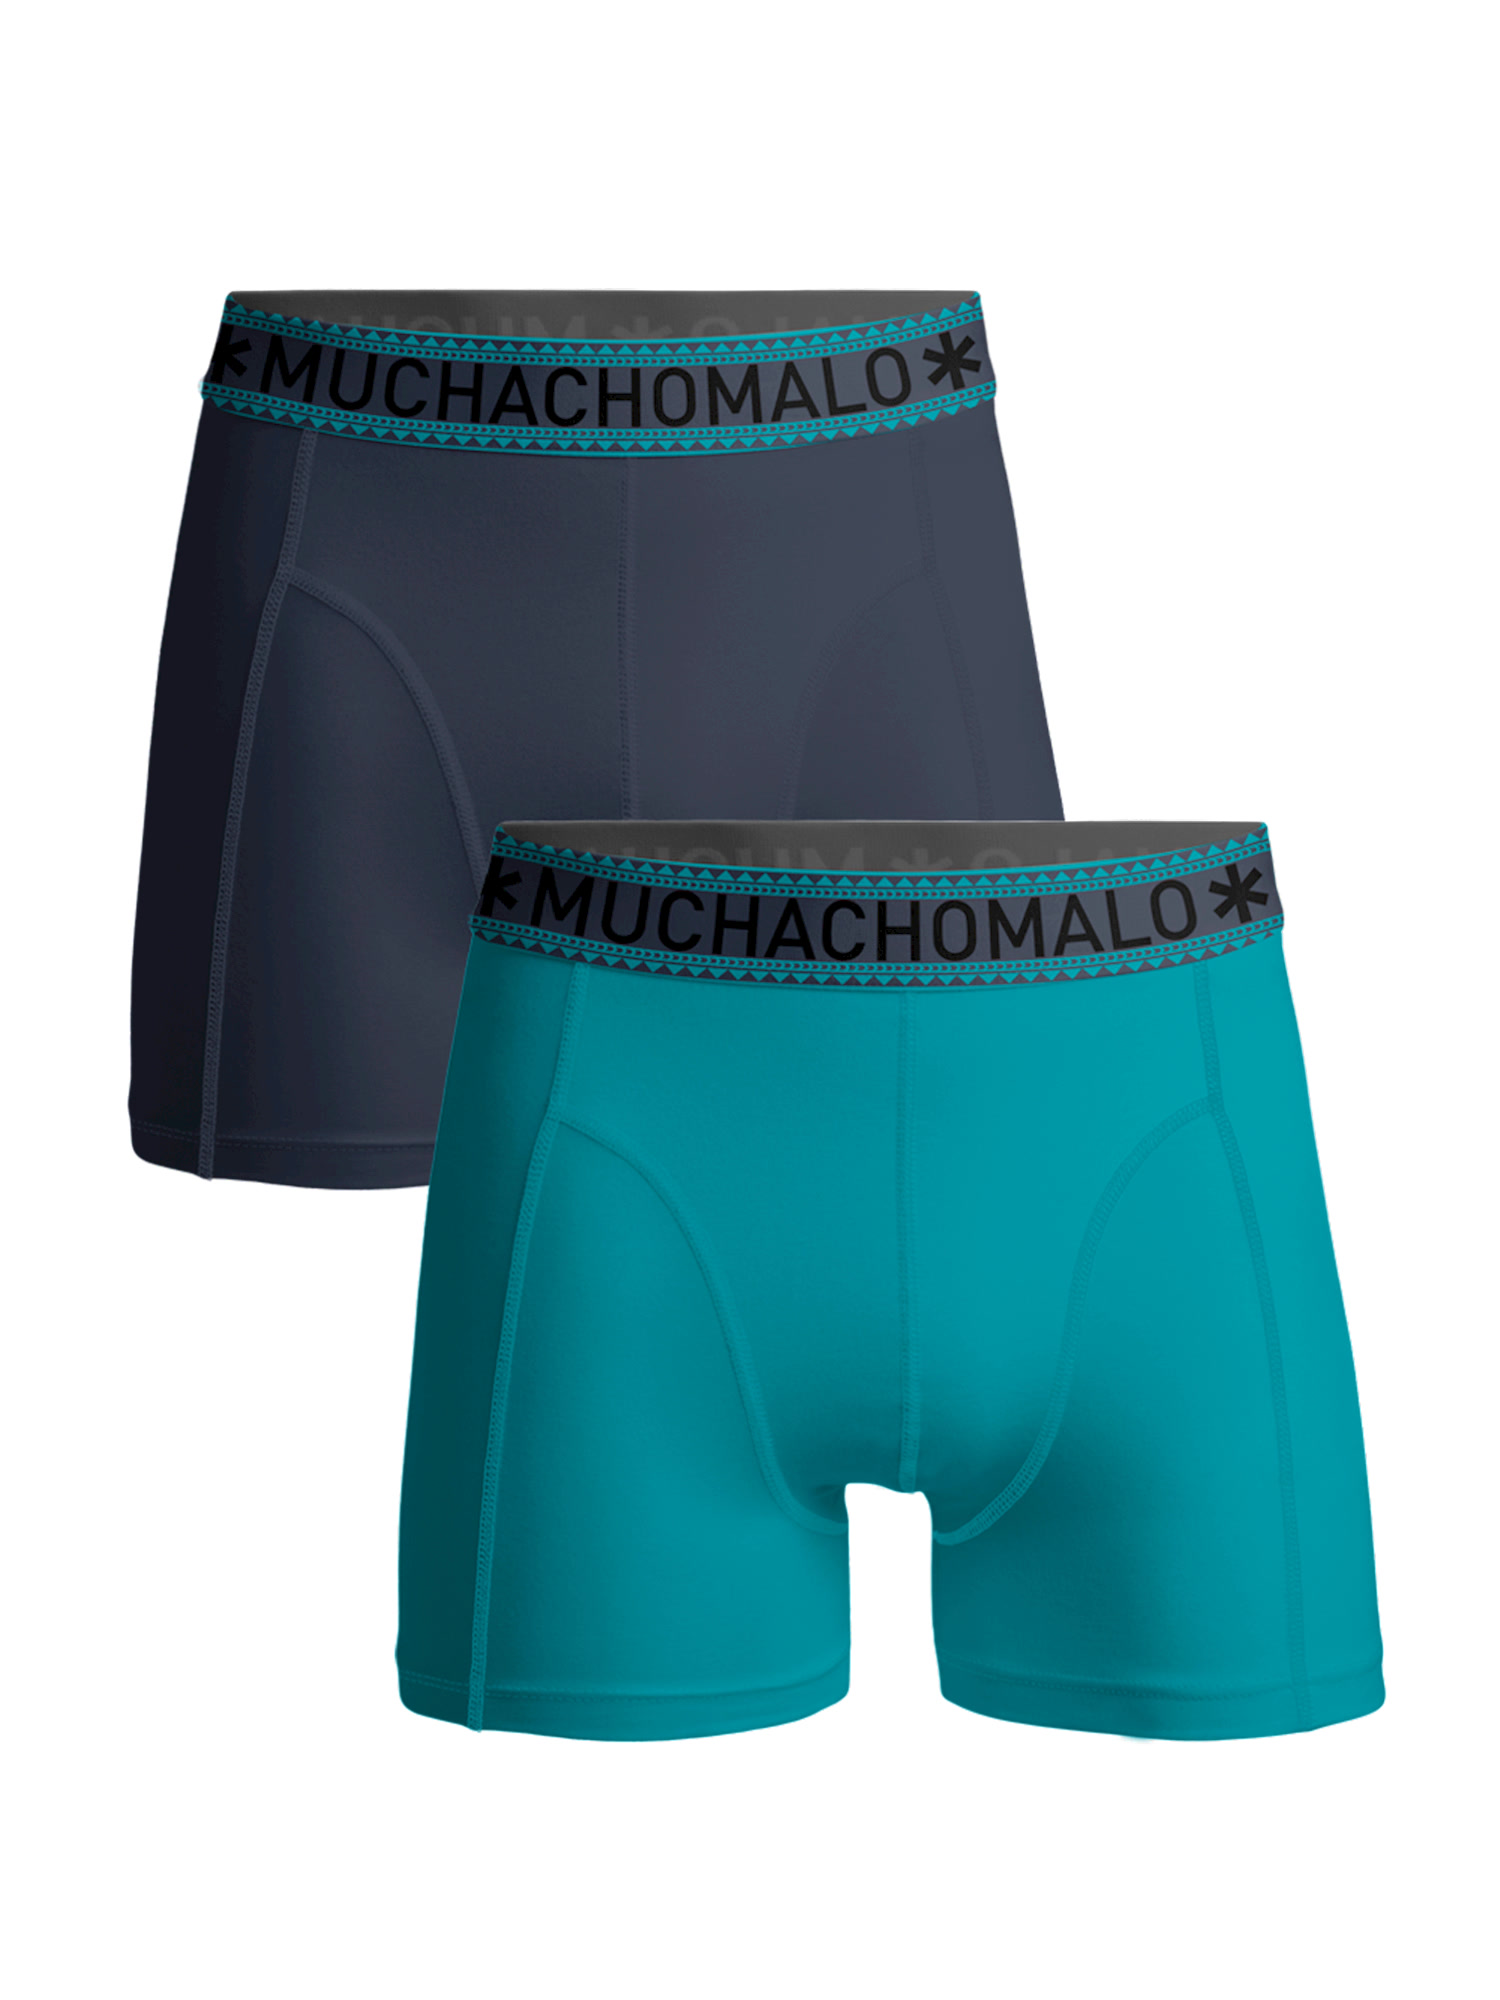 Боксеры Muchachomalo 2er-Set: Boxershorts, цвет Blue/Blue боксеры muchachomalo 5er set boxershorts цвет black blue blue green green